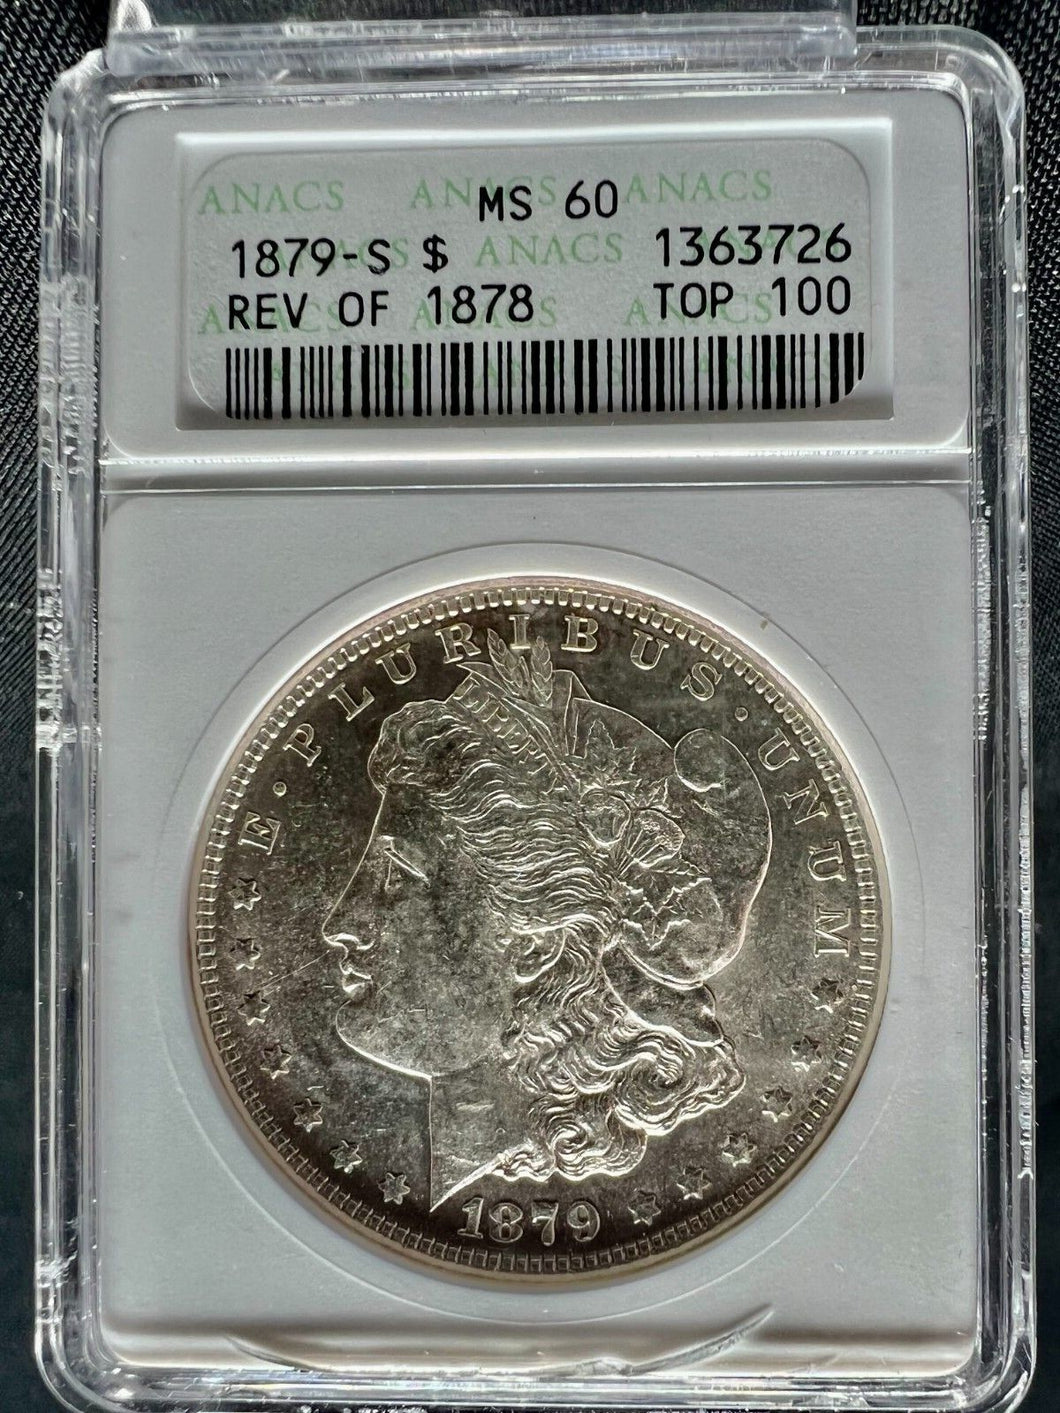 1879-S Reverse 1878 $1 Morgan Silver Dollar ANACS MS60 - Rare Coin - Nice Unc